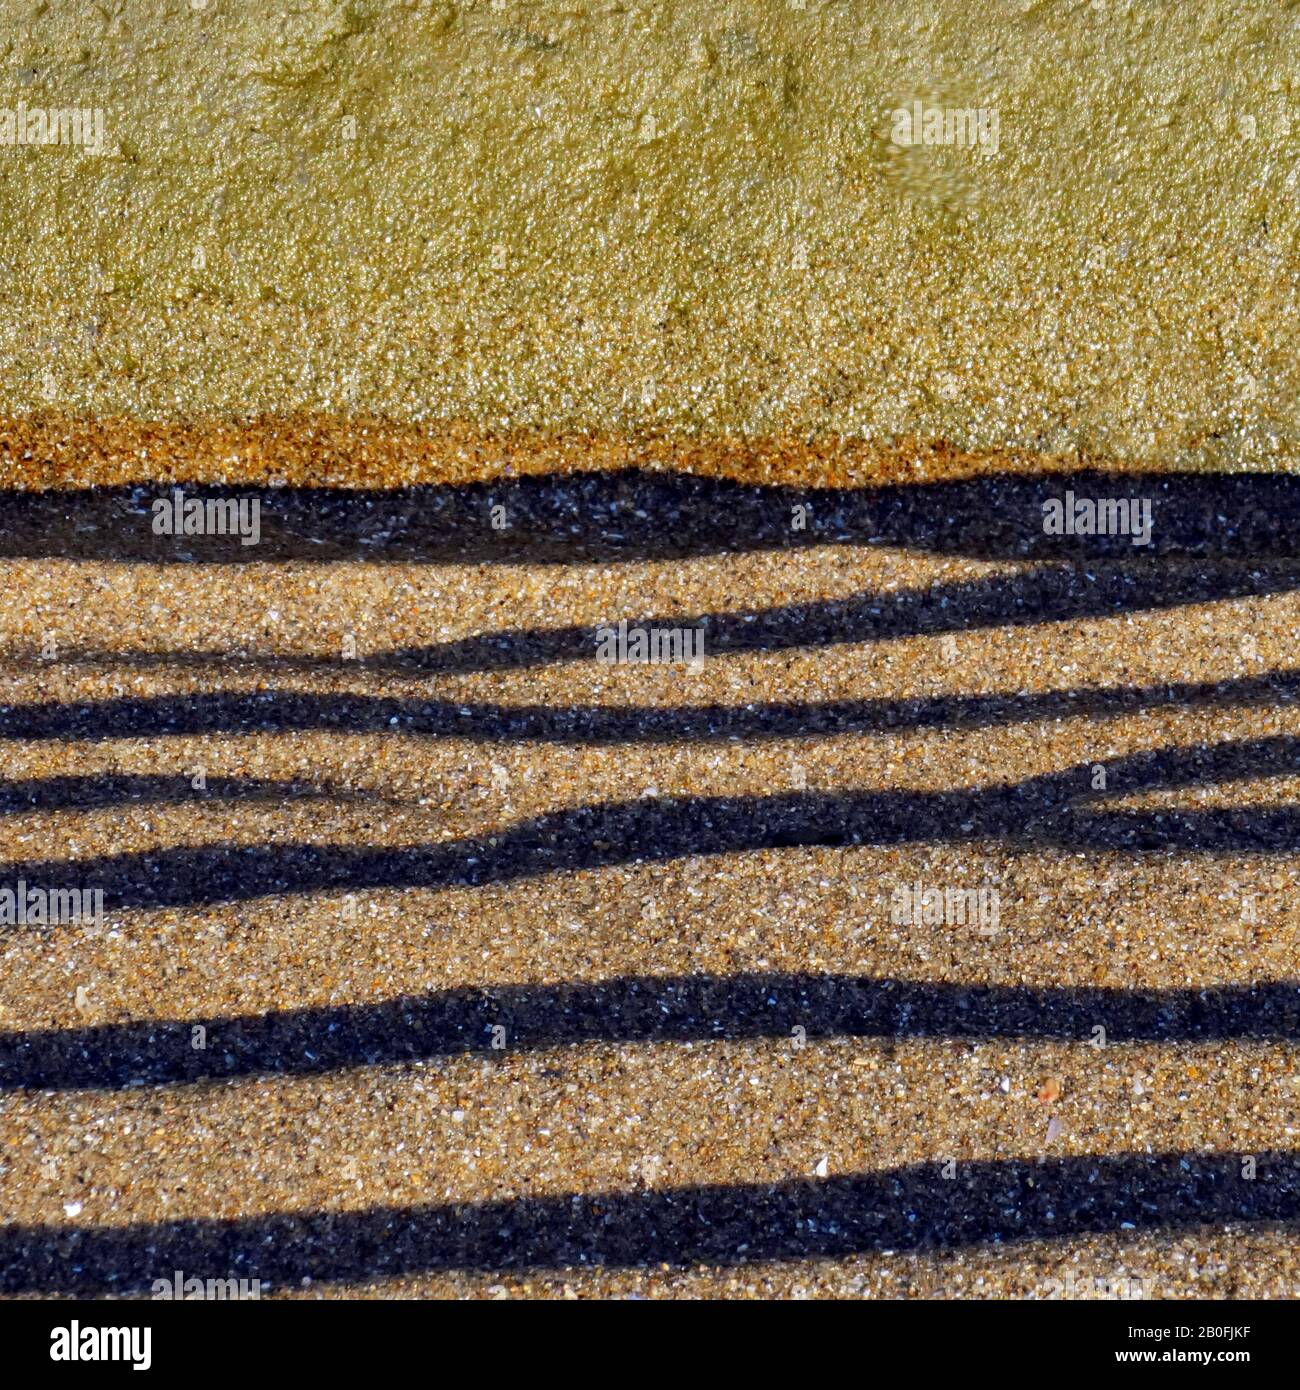 Photo de couleur semi-abstraite des bassins rocheux, de l'eau, du sable et de la roche, l'image est un abstrait de couleur avec un style proche de l'impressionnisme contenant du rock pa Banque D'Images